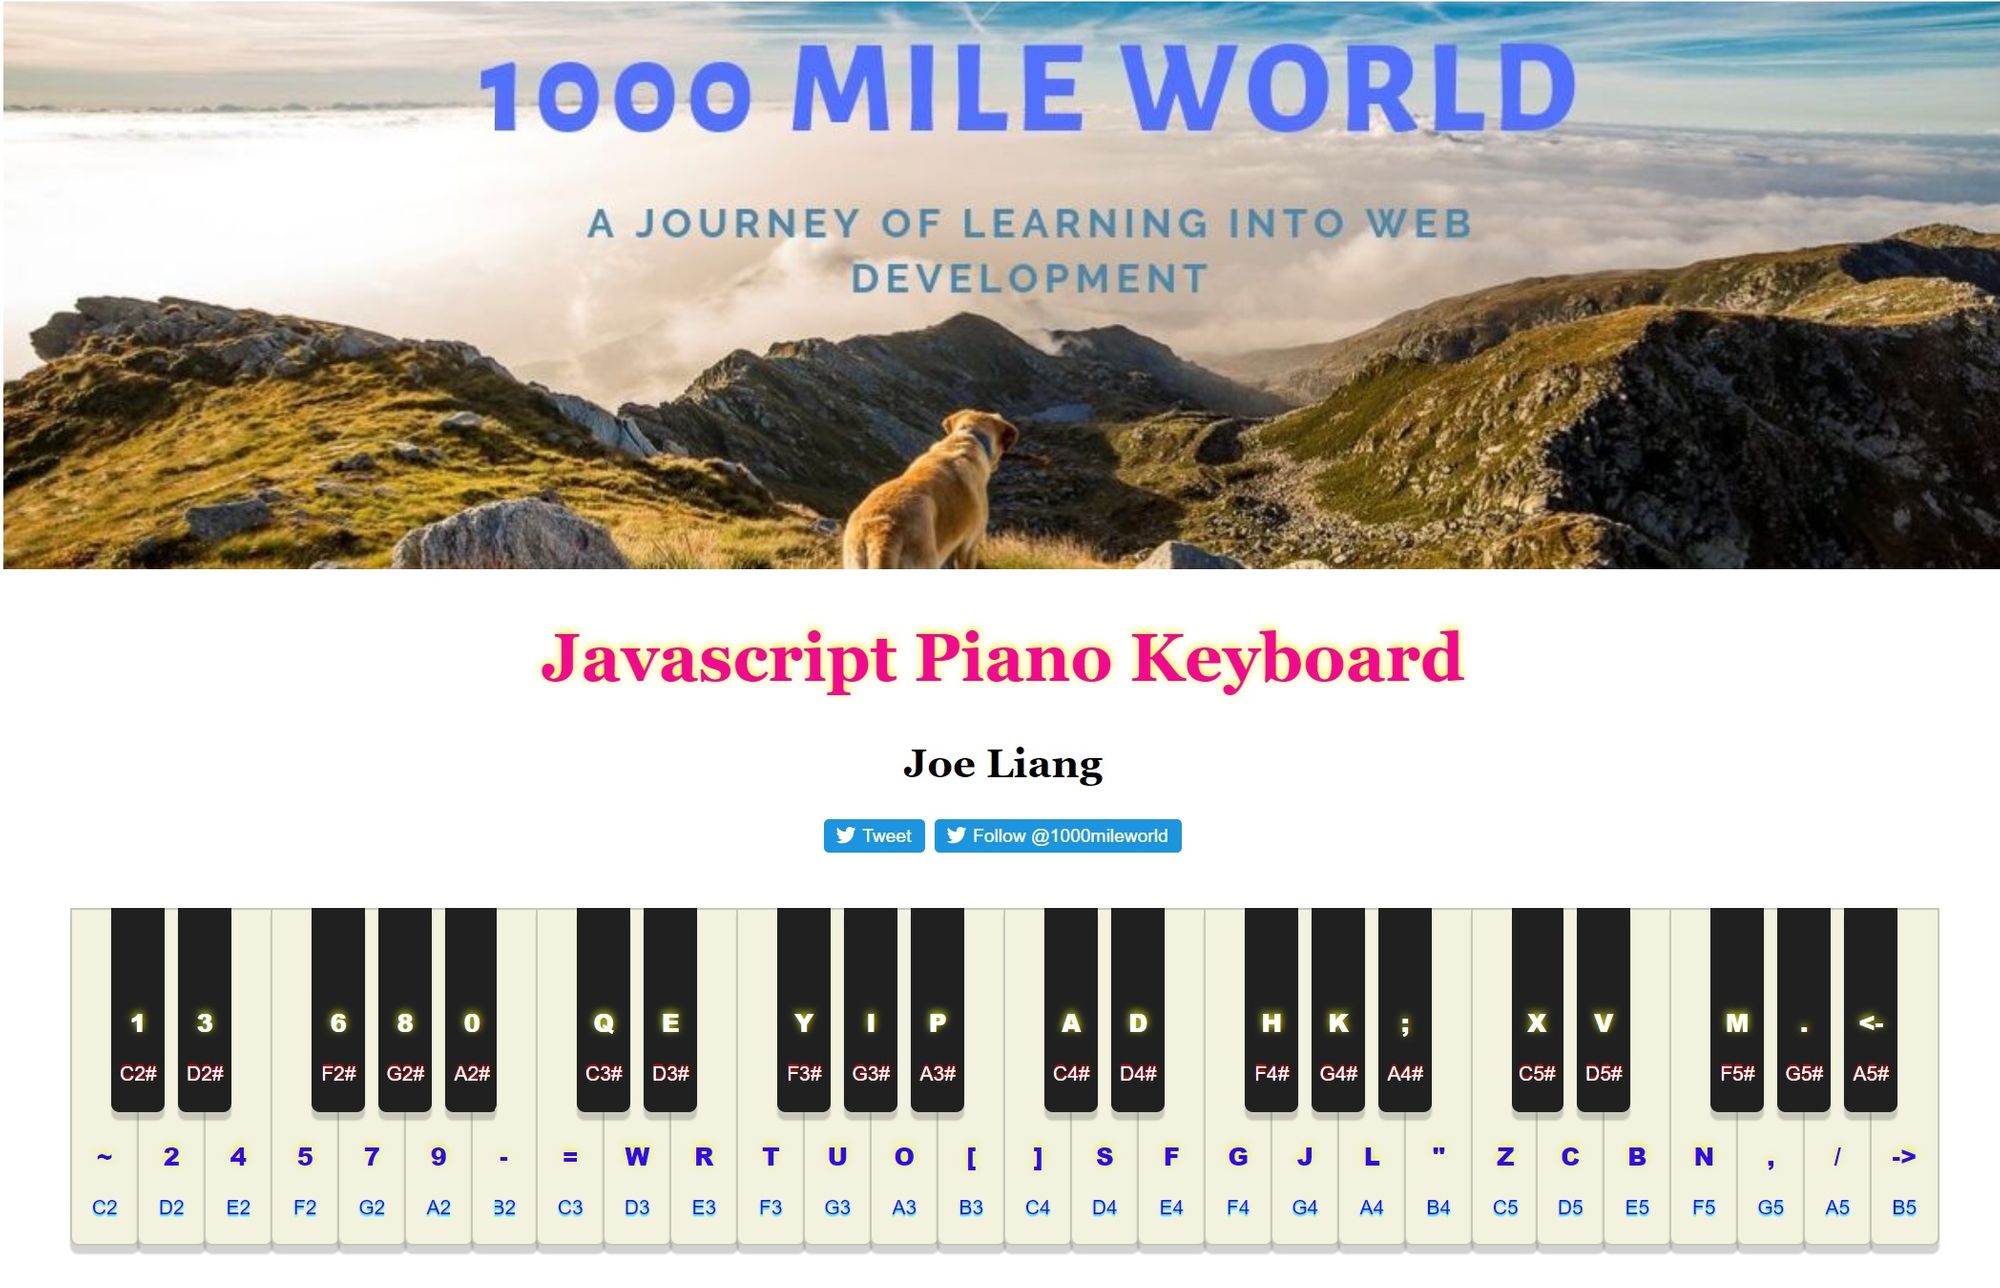 Virtual Piano Keyboard With JavaScript - piano.js